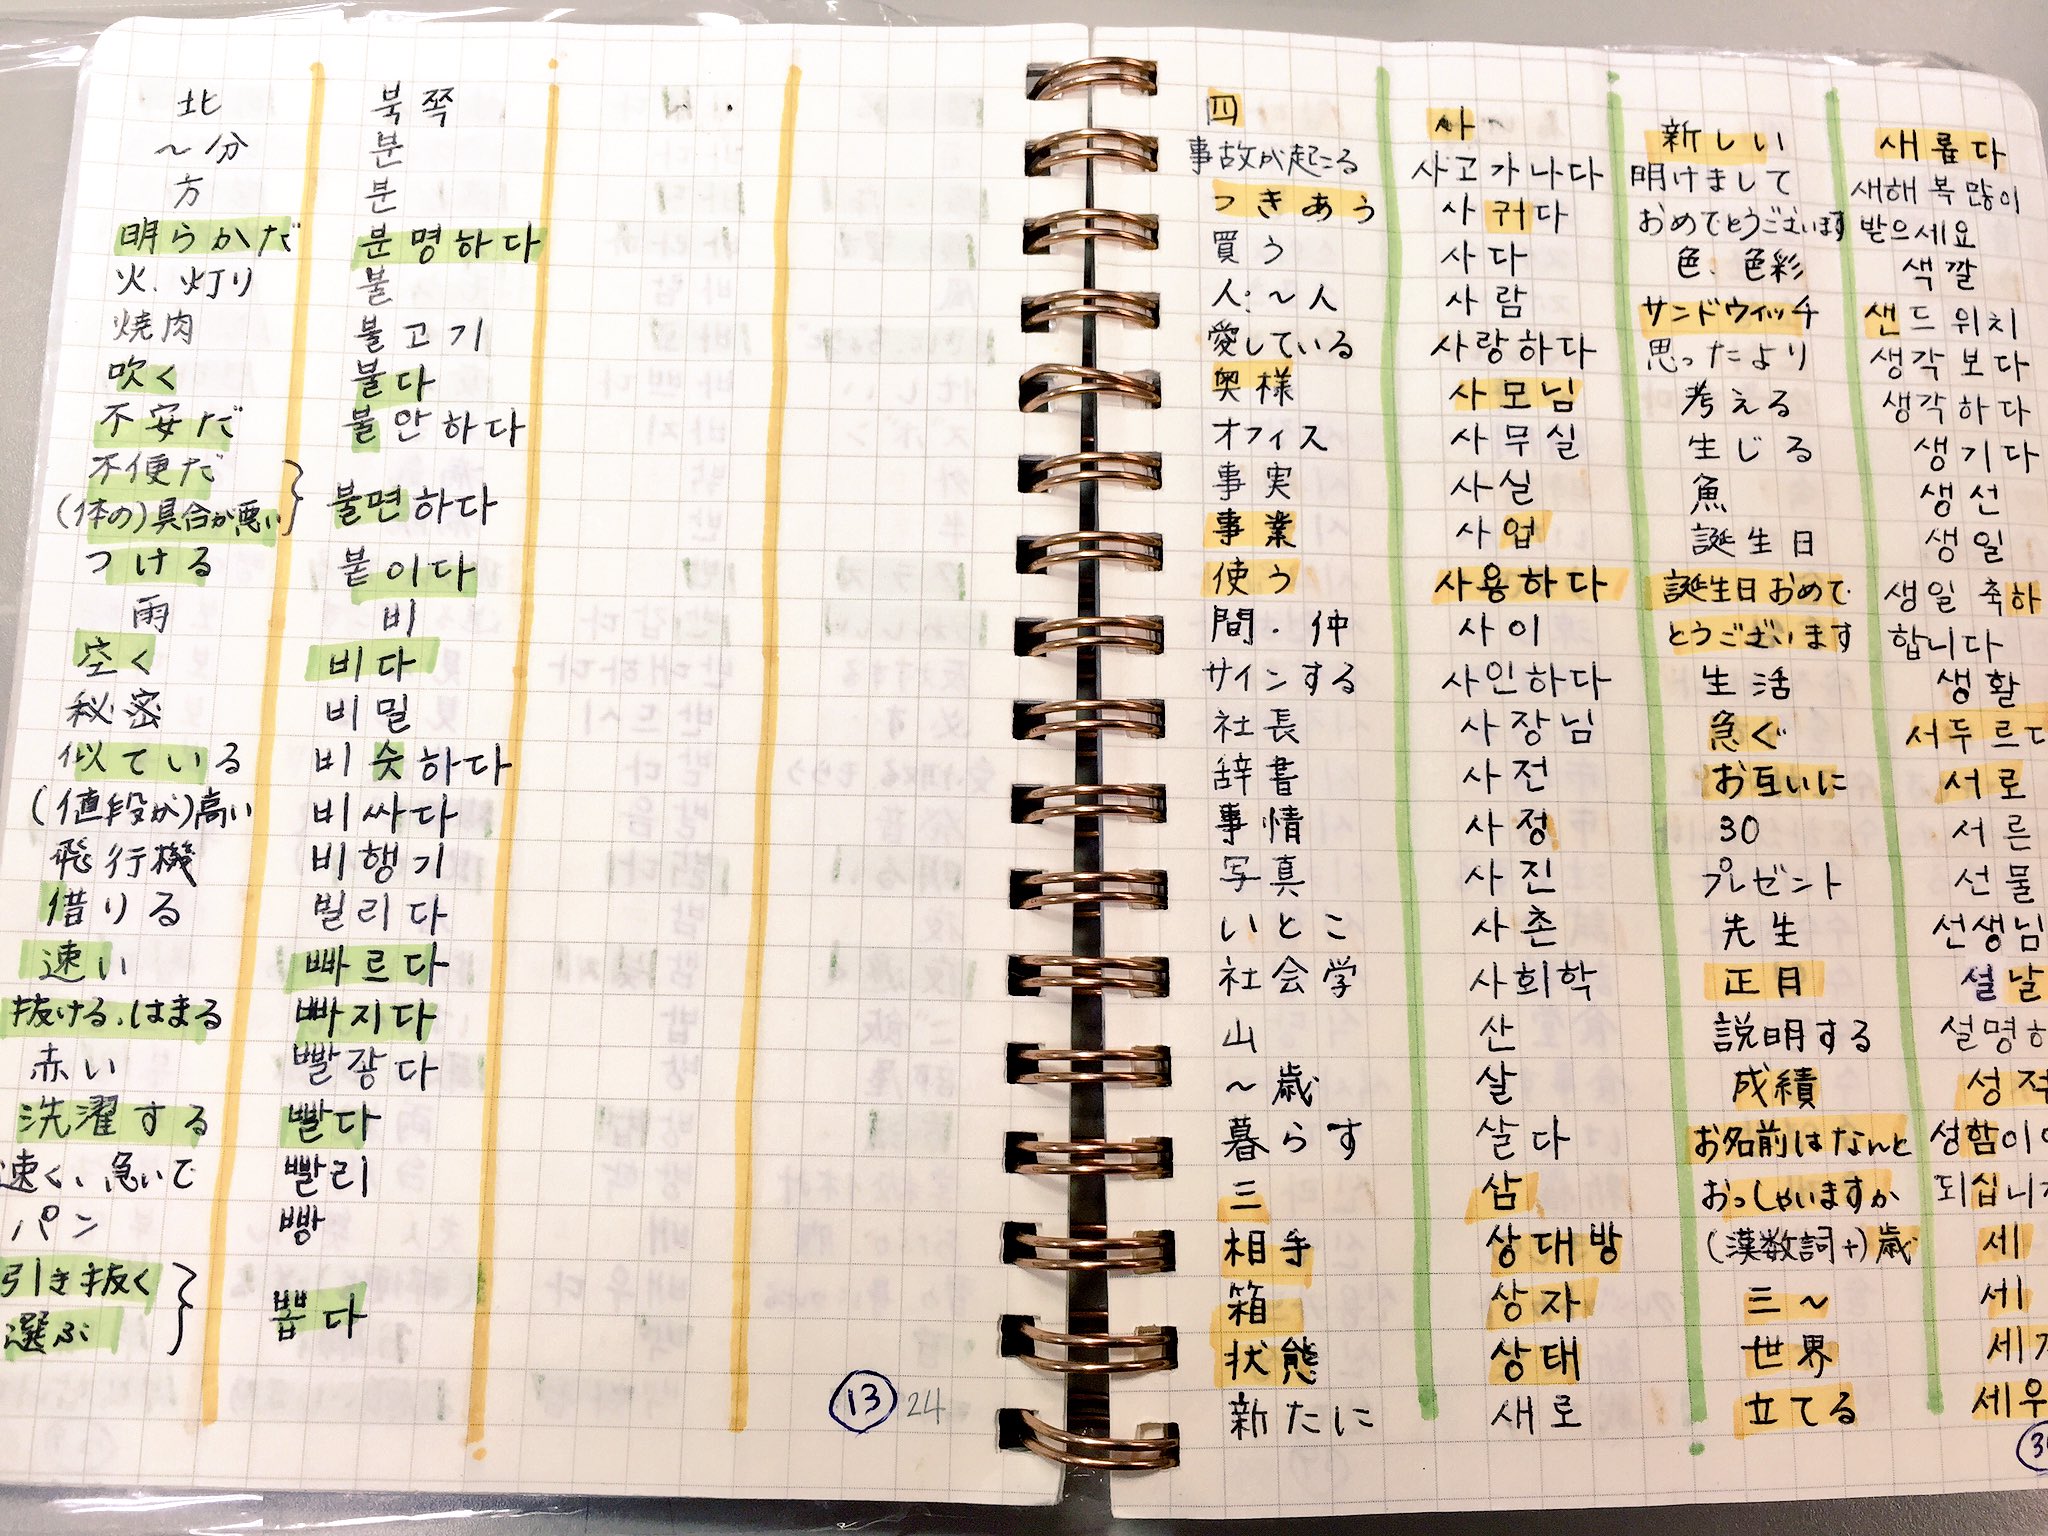 韓国語のhana 韓国語学習者さんノート3 この方の単語帳は試験対策用なので 気合いが入ってます P W Q 3月1日より 丸善松本店地1階韓国語売り場で展示します 韓国語ノート T Co Cikkwh7y7x Twitter